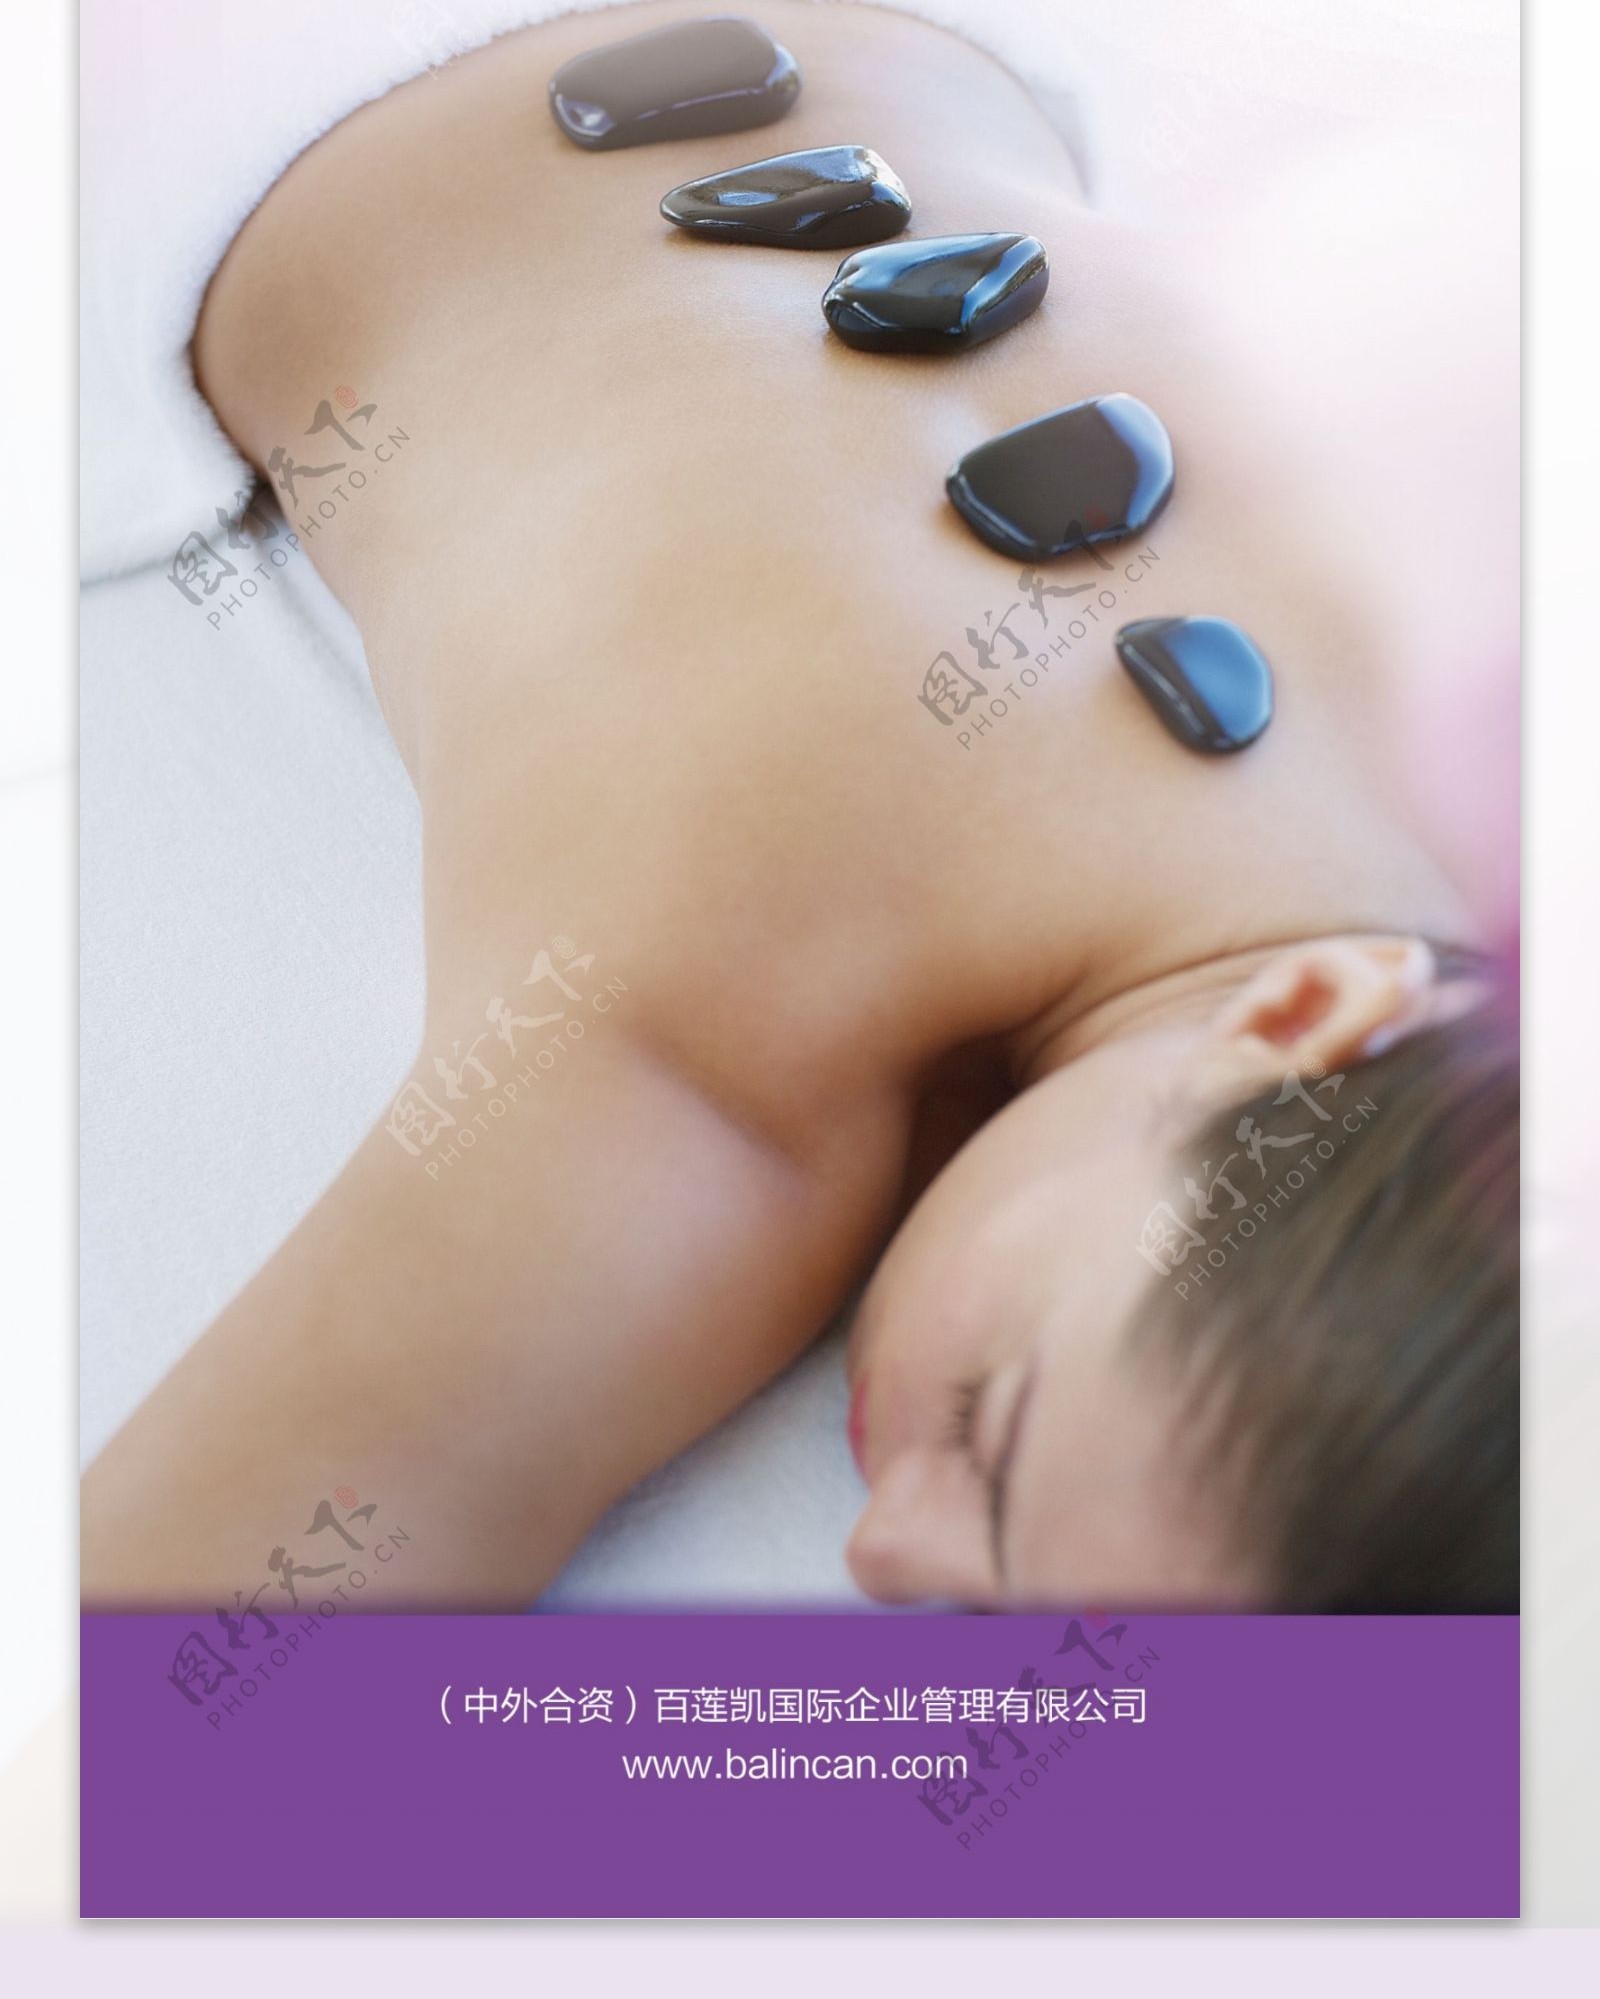 背部理疗石疗化妆品X展架图片